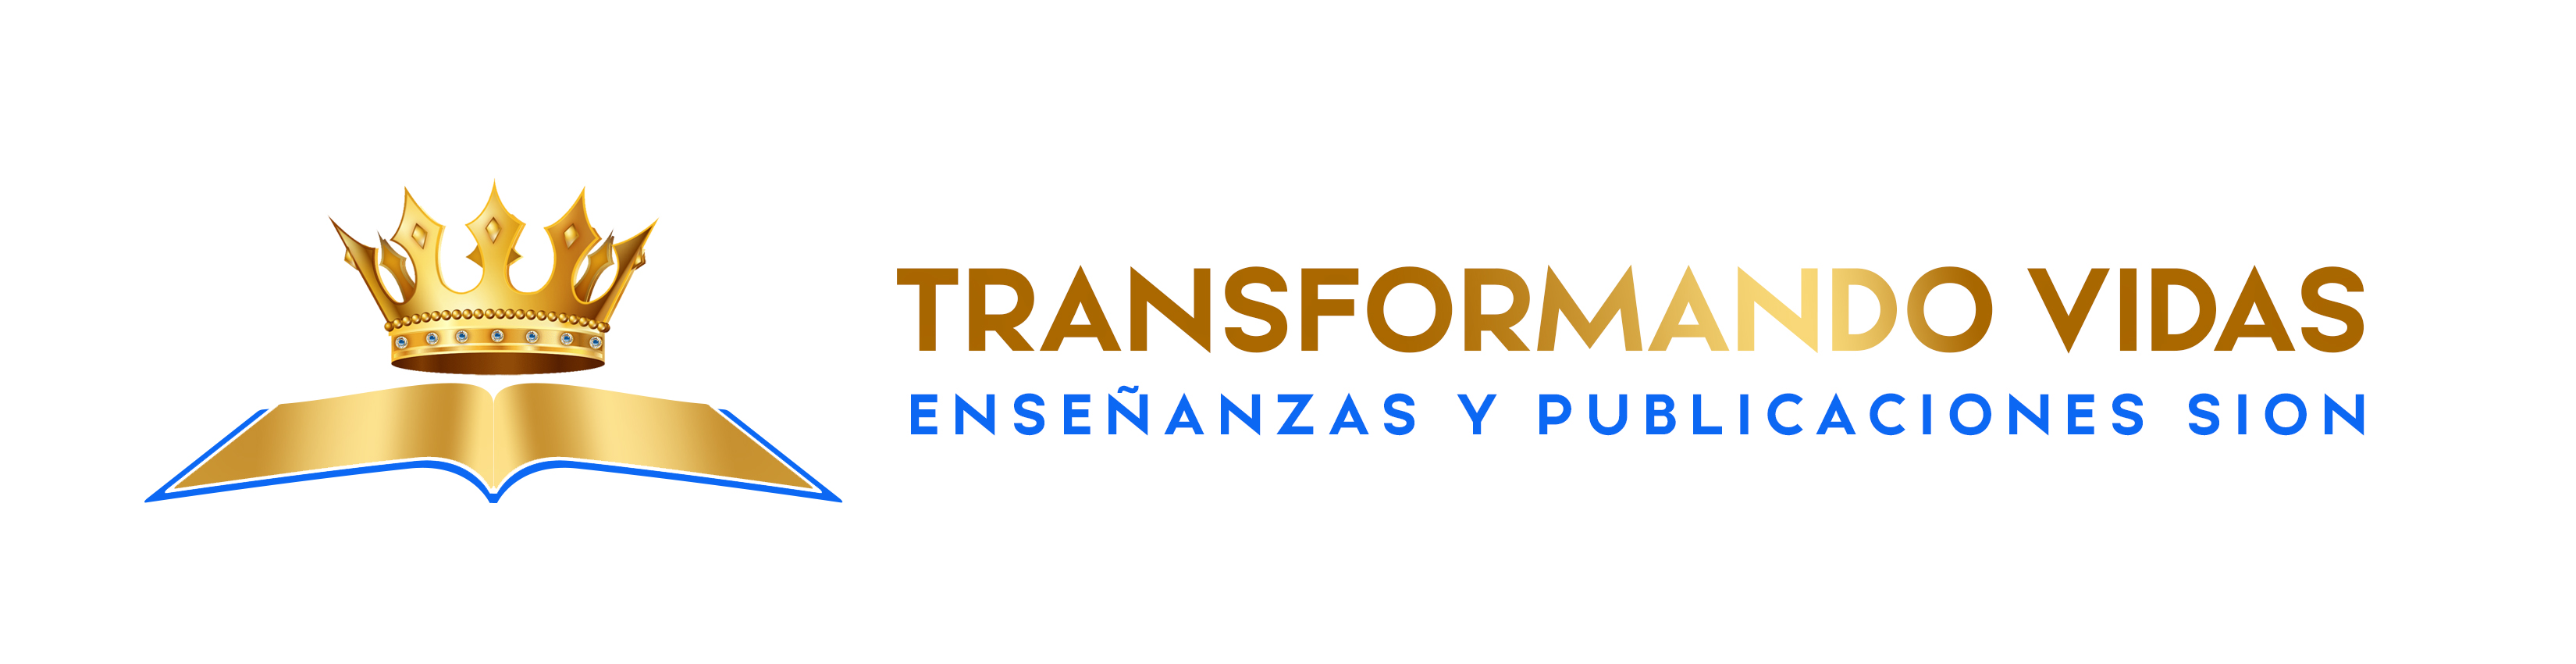 Enseñanzas y Publicaciones Sion logo